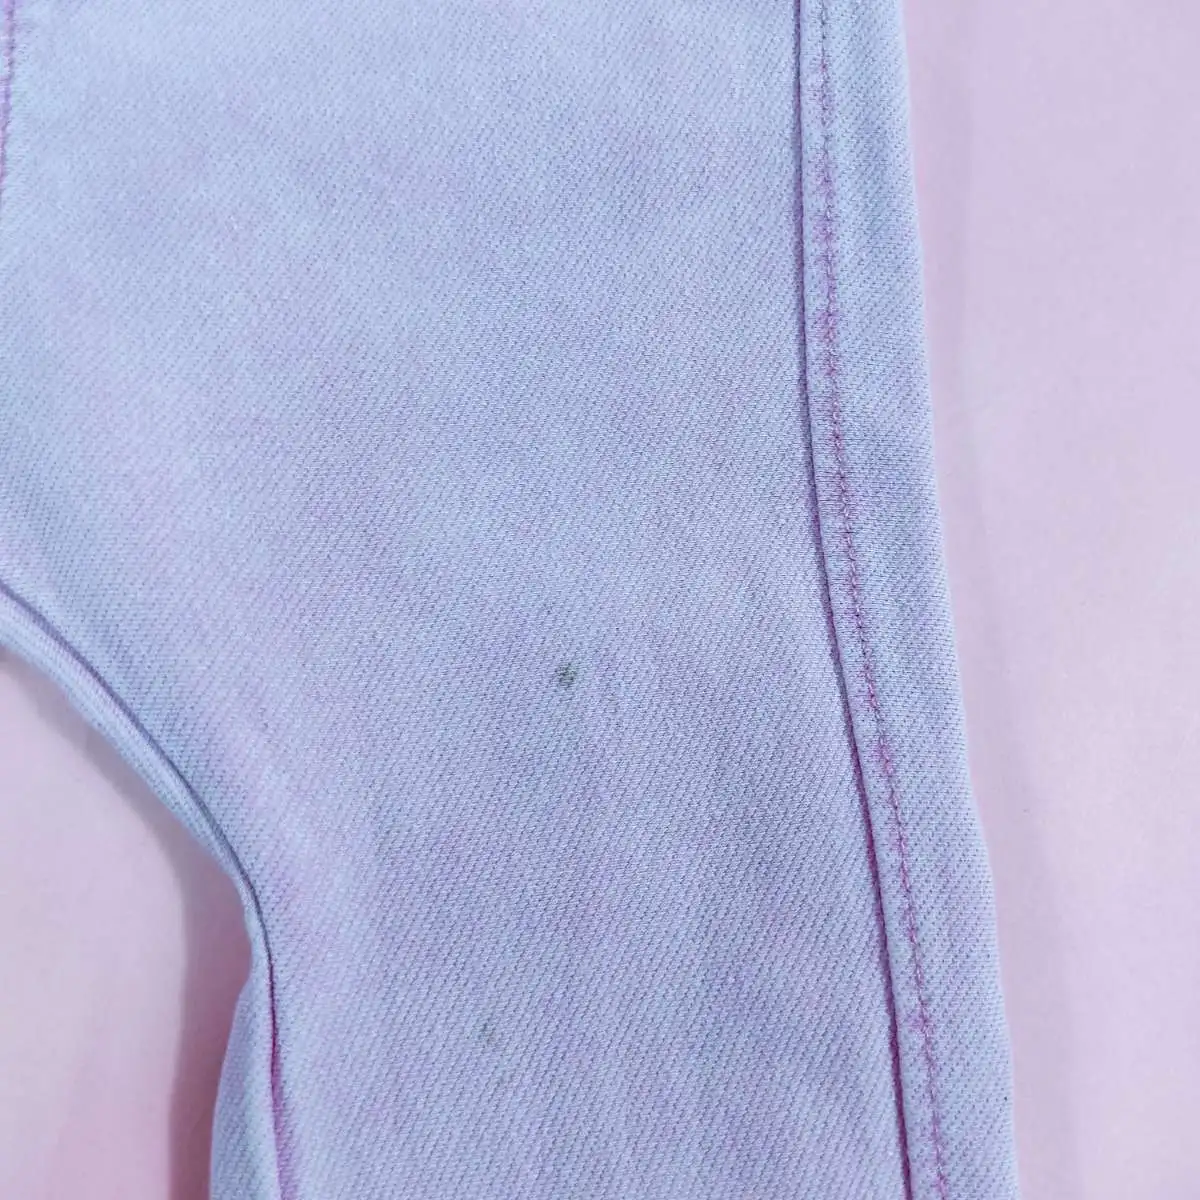 ZARA baby กางเกงเลคกิ้งขายาวสีชมพู 18-24 cm